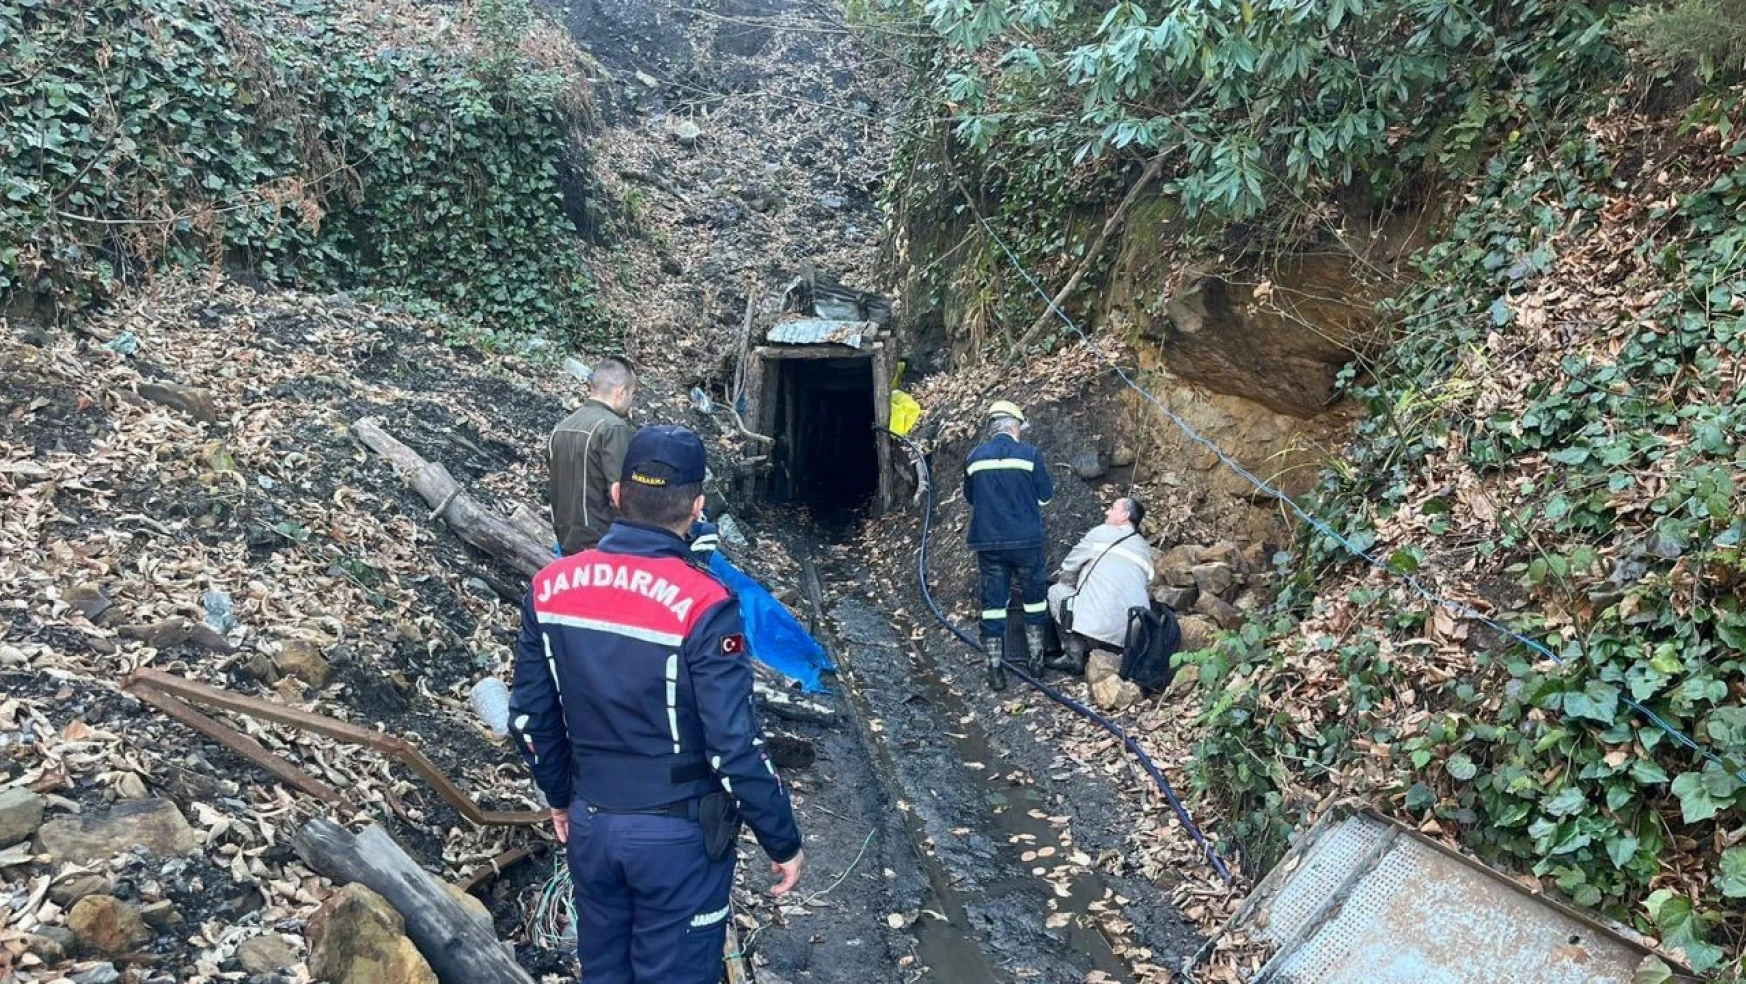 Zonguldak'ta kaçak olarak işletilen maden ocakları imha edildi